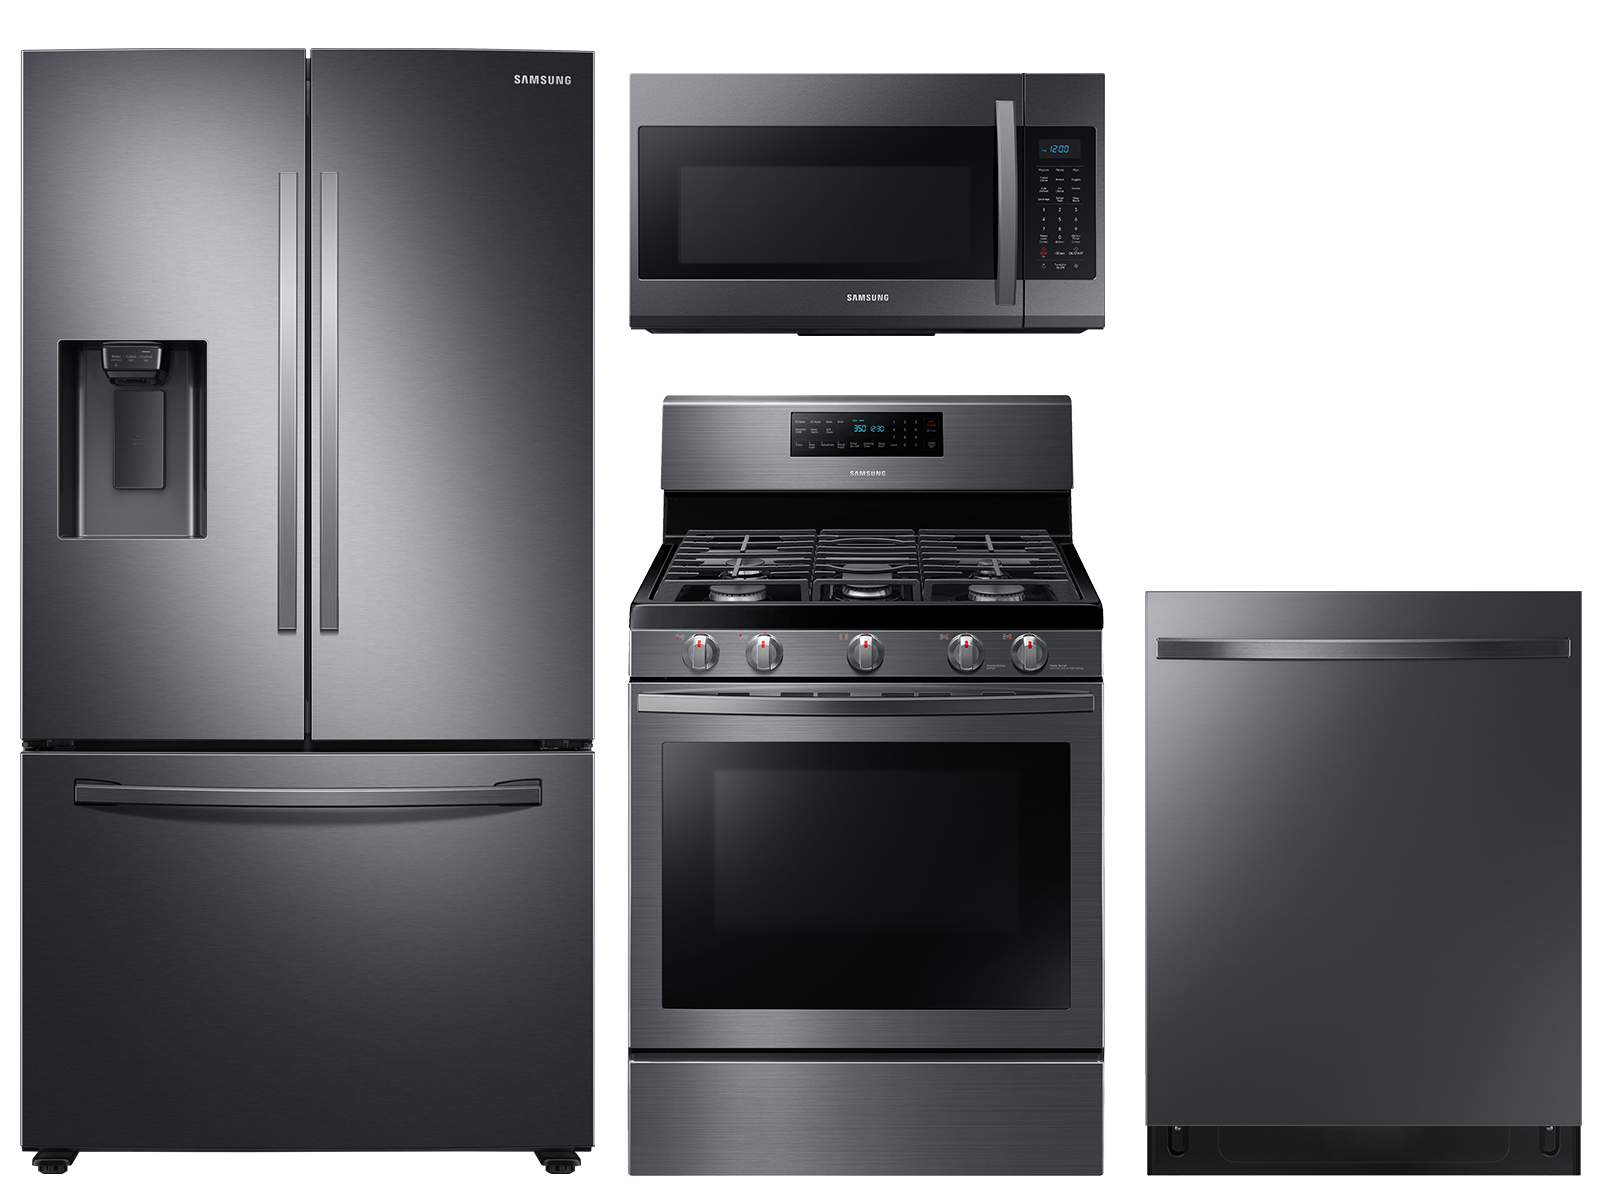 Samsung Large capacity 3-door refrigerator & gas range package in Black stainless(BNDL-1590166155500)